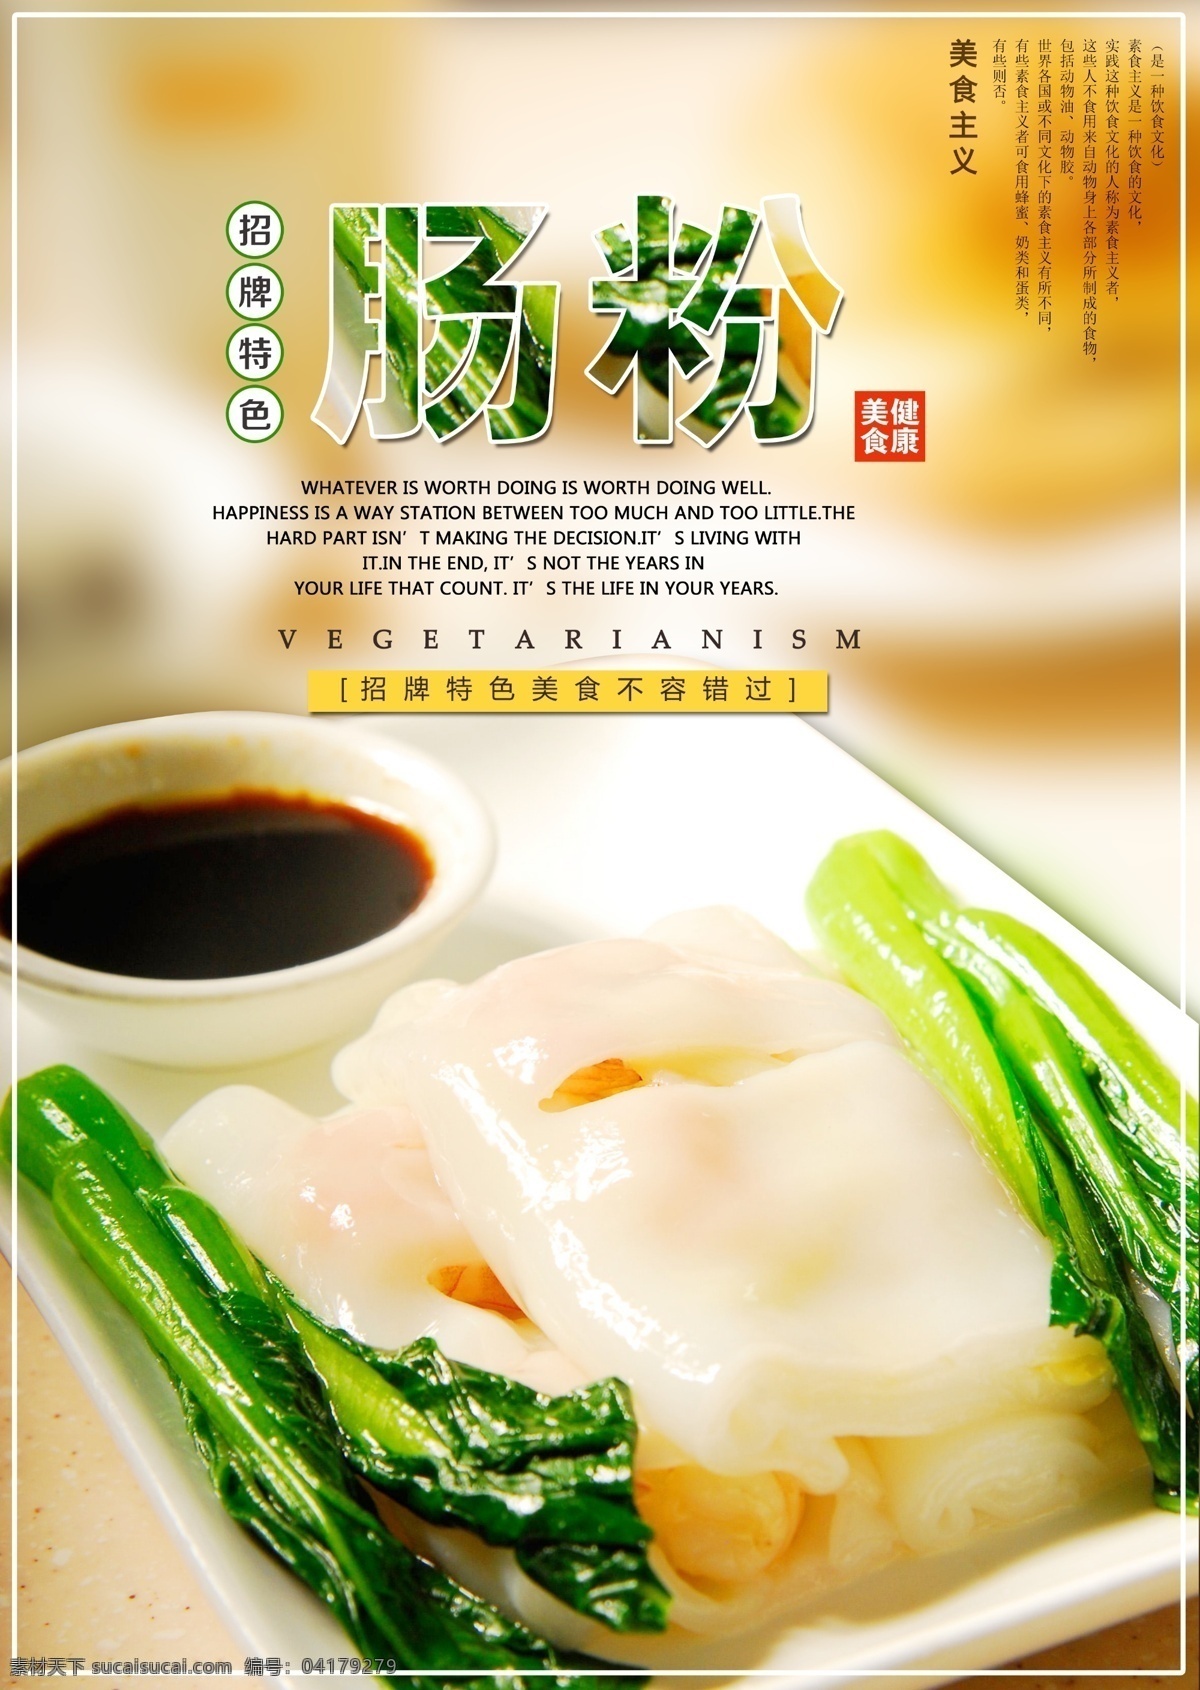 肠粉海报 肠粉 肠粉图片 中国风肠粉 中华美食 饮食文化 海报